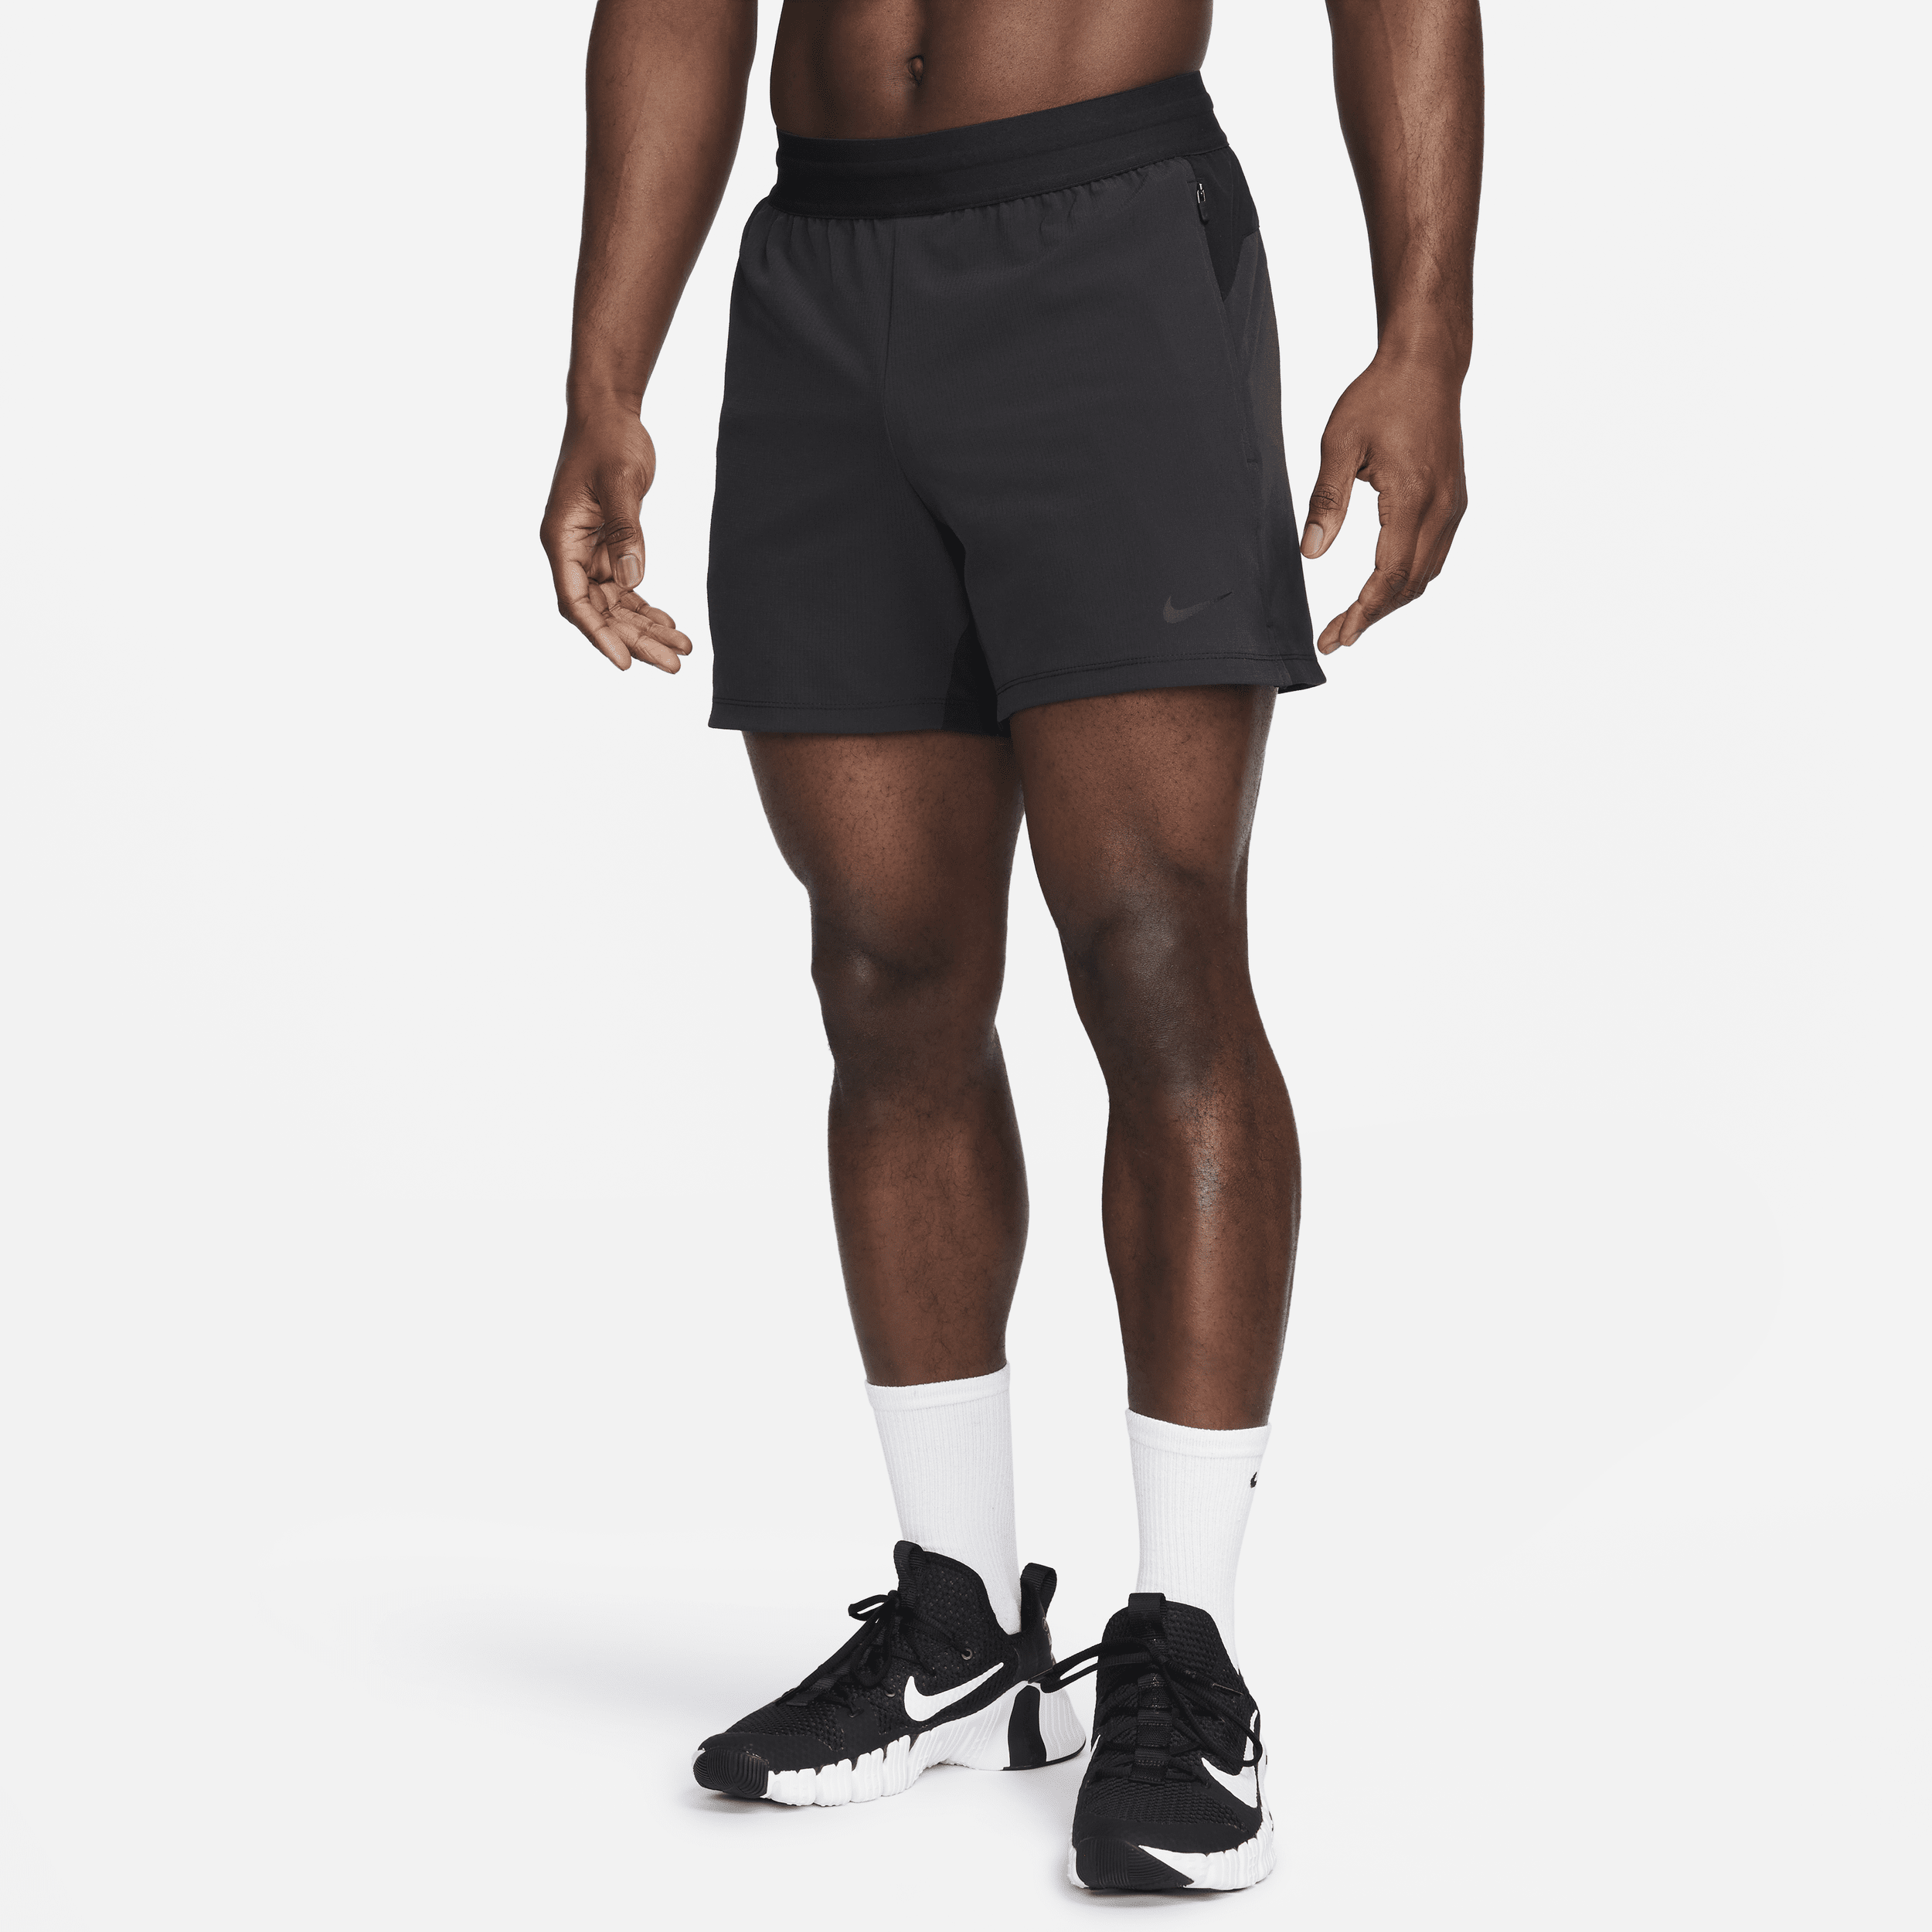 Shorts da fitness Dri-FIT non foderati 13 cm Nike Flex Rep – Uomo - Nero